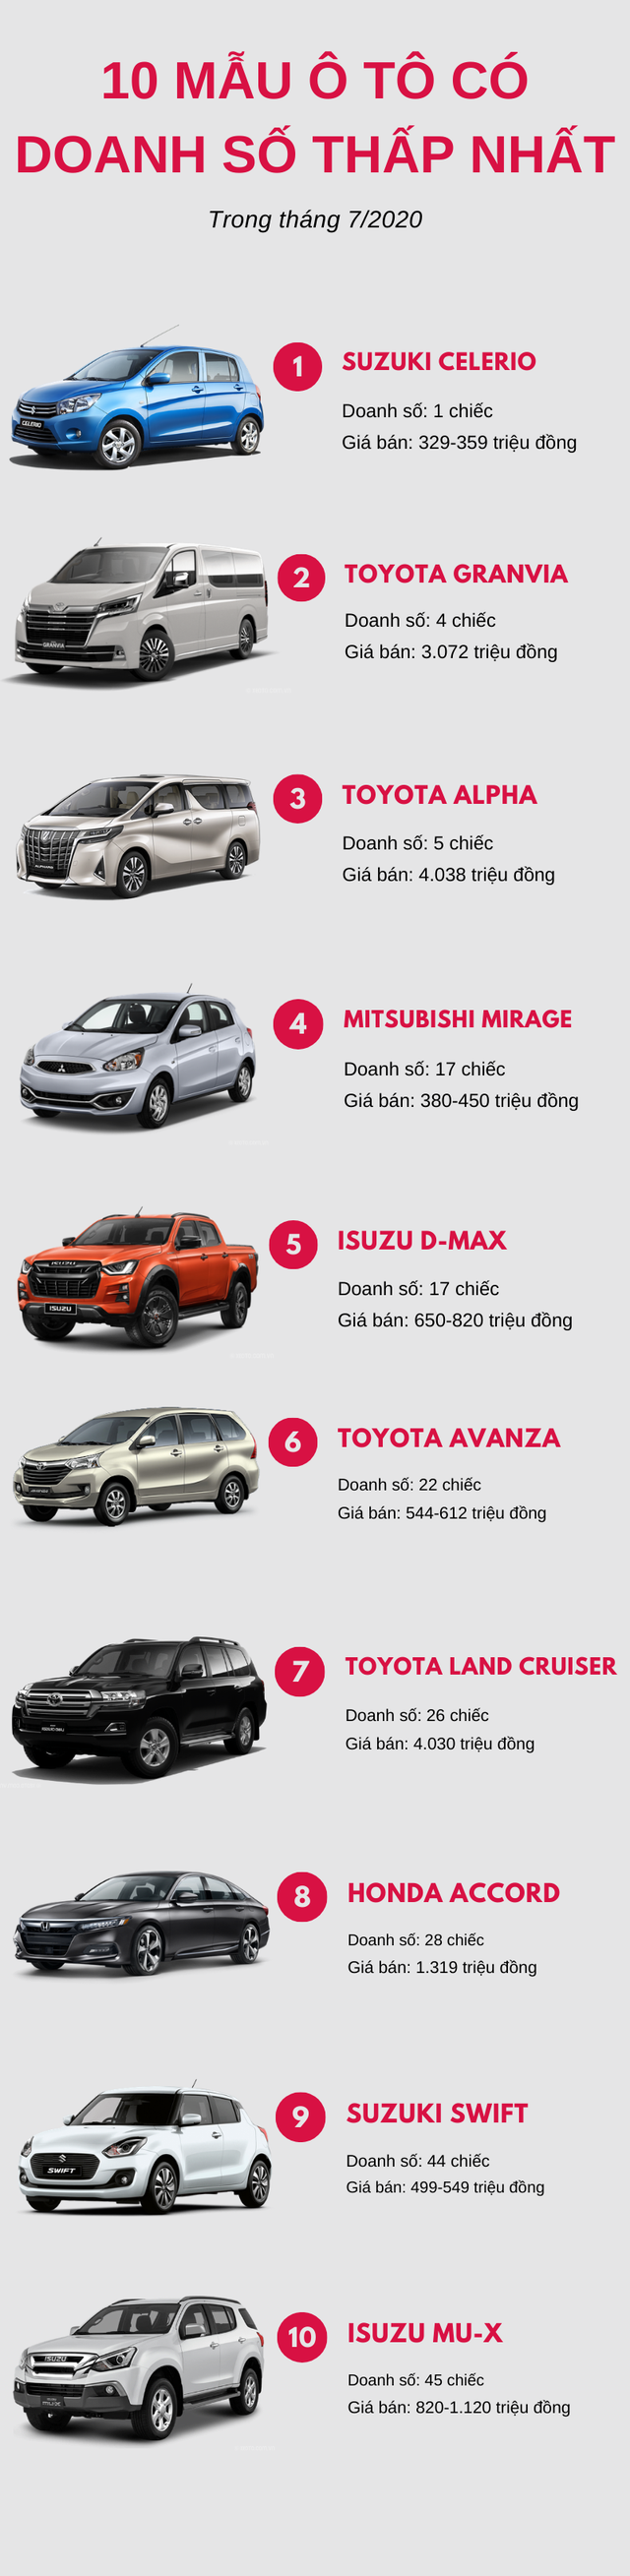 Top 10 mẫu ô tô ế ẩm nhất tháng 7/2020: Toyota chiếm đa số - Ảnh 1.